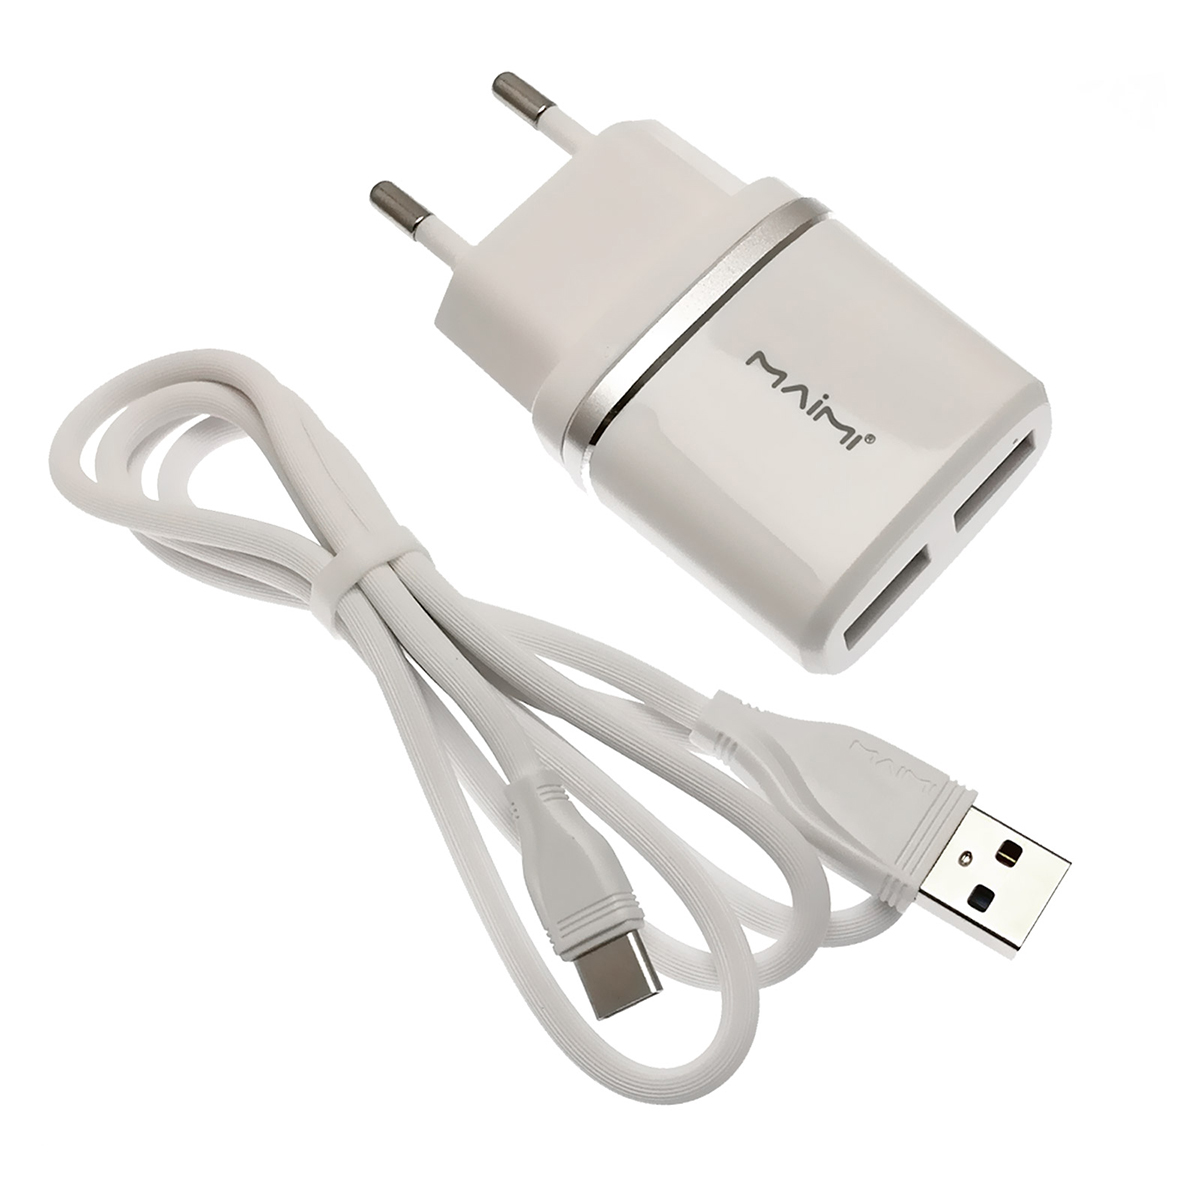 MAIMI T8 2 в 1 СЗУ (сетевое зарядное устройство) на 2 USB порт 5V-2.4A + кабель Type-C длиной 1 метр, цвет белый.